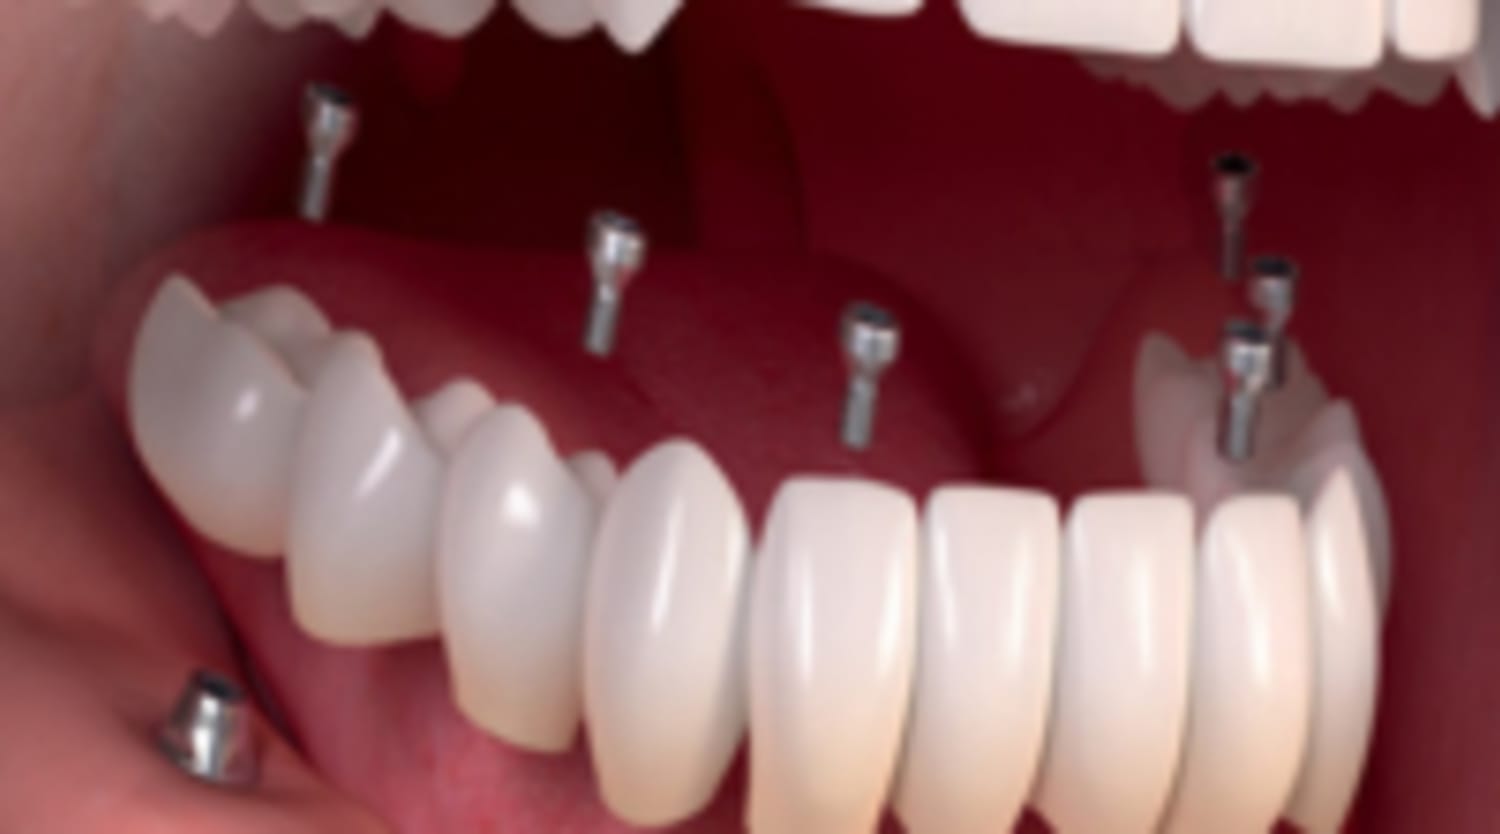 Taboola Ad Example 13457 - Dental Implants | Sponsored Listings